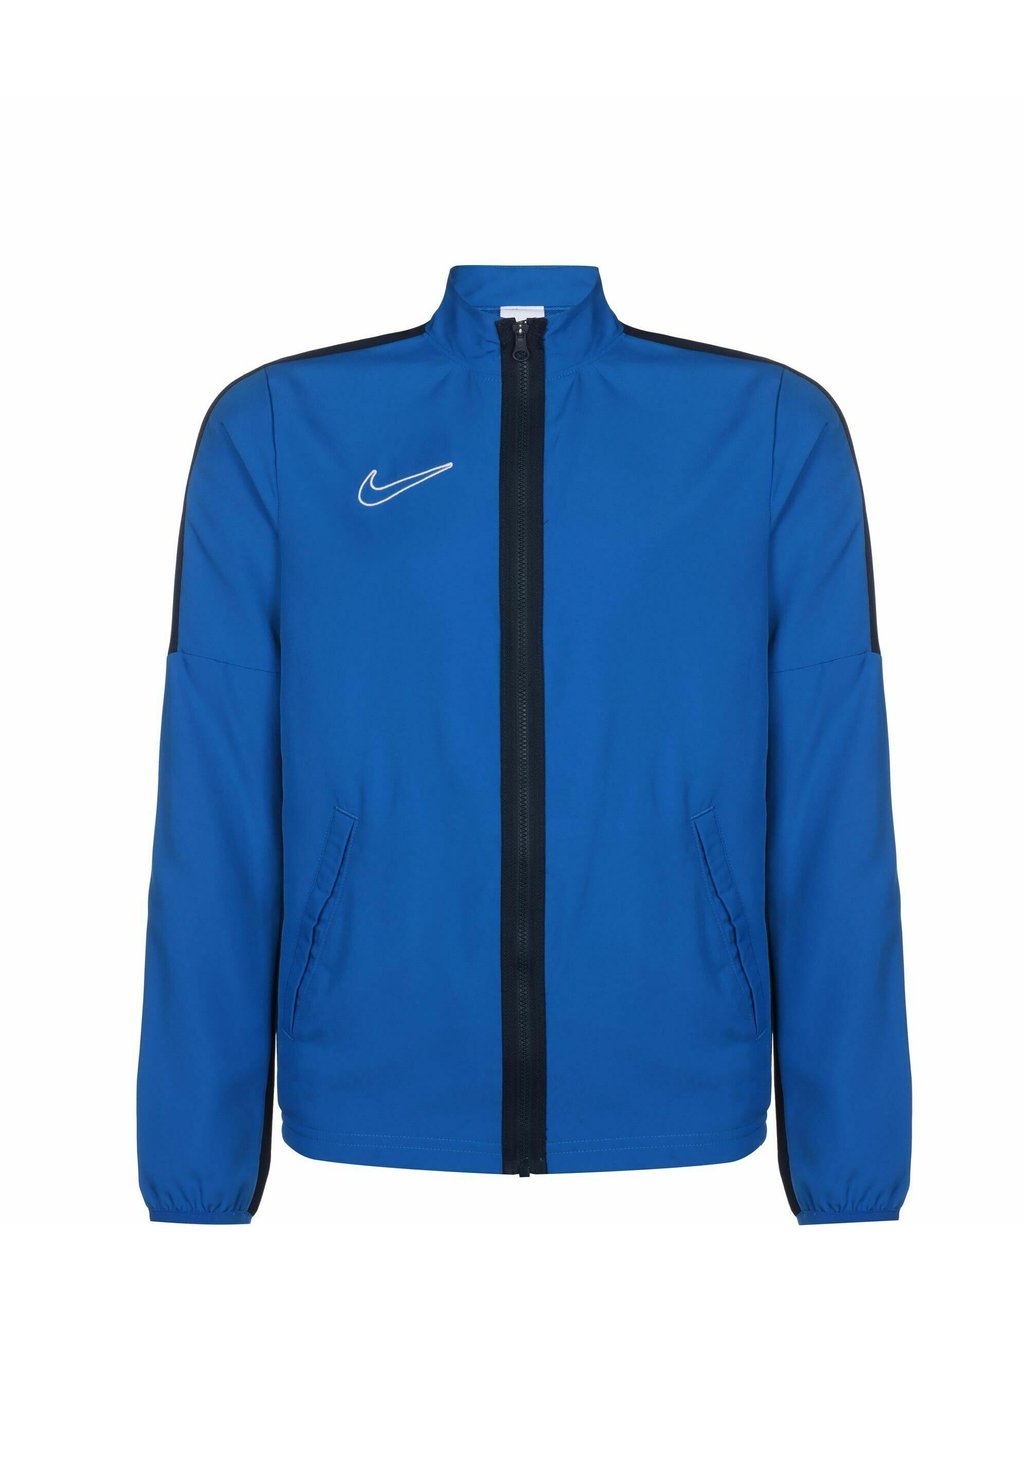 Спортивная куртка Academy 23 Nike, цвет royal blue obsidian white